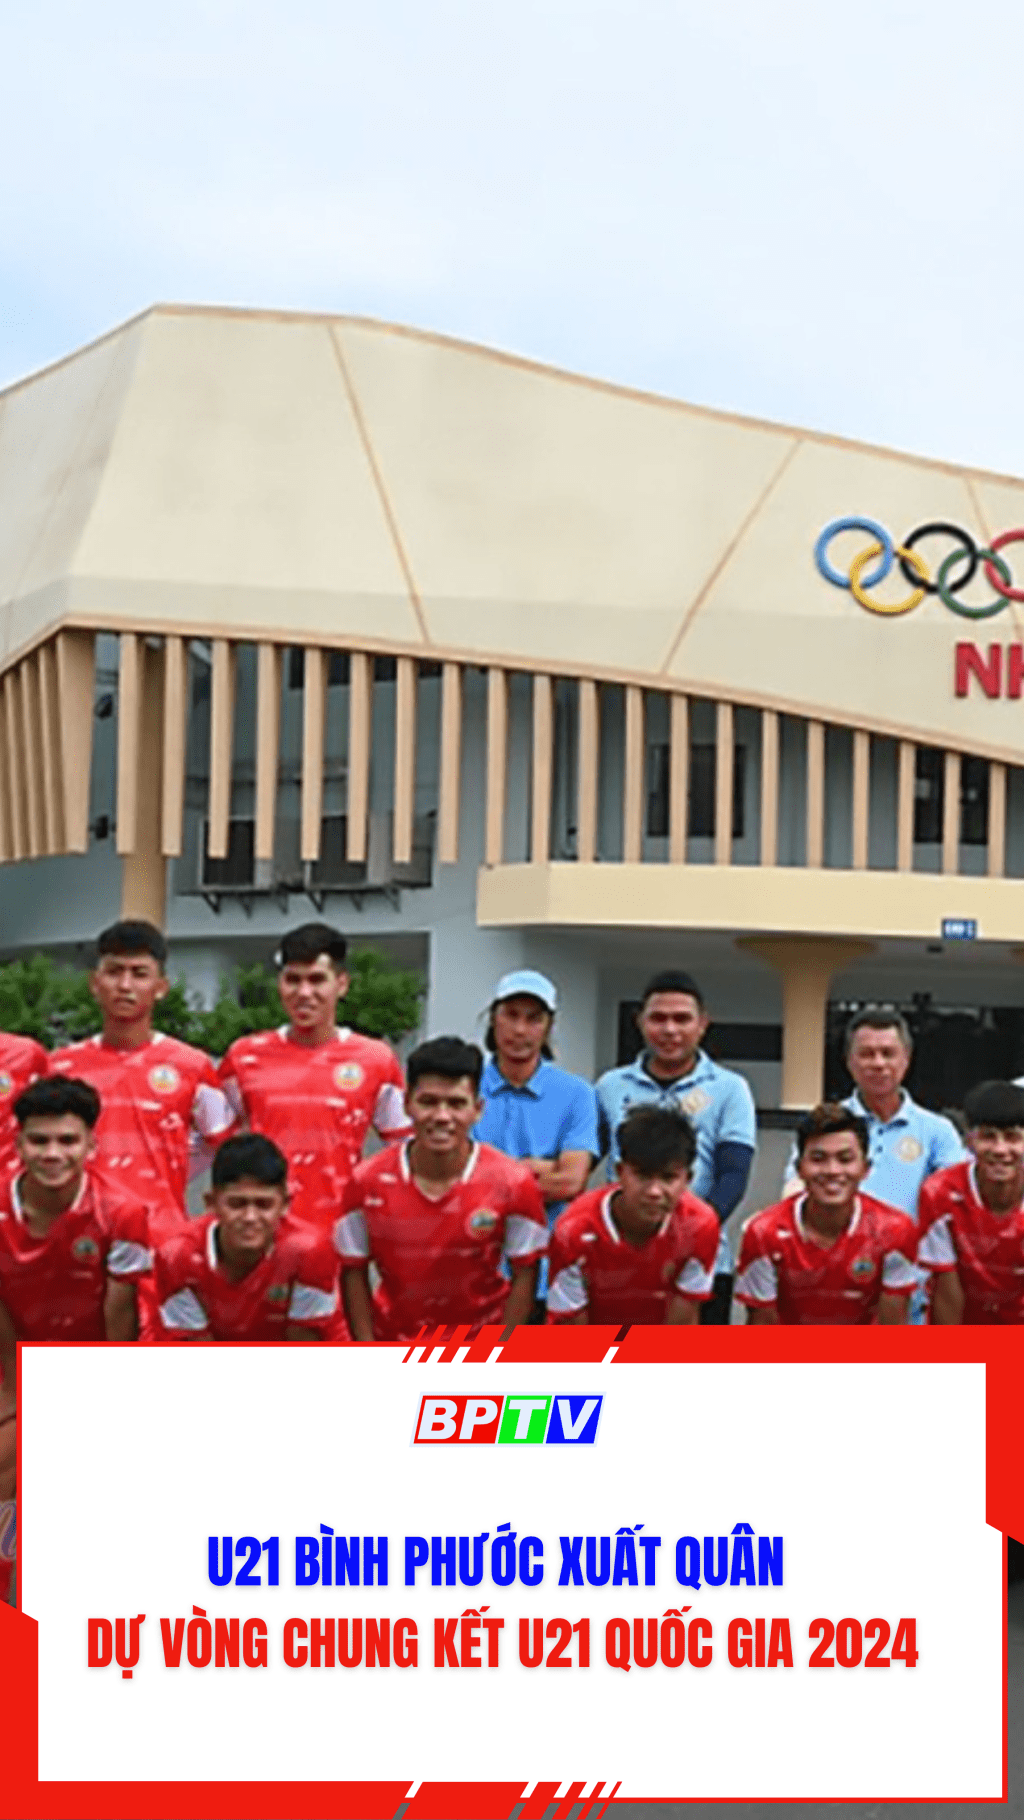 U21 Bình Phước xuất quân dự Vòng chung kết U21 quốc gia 2024 #shorts